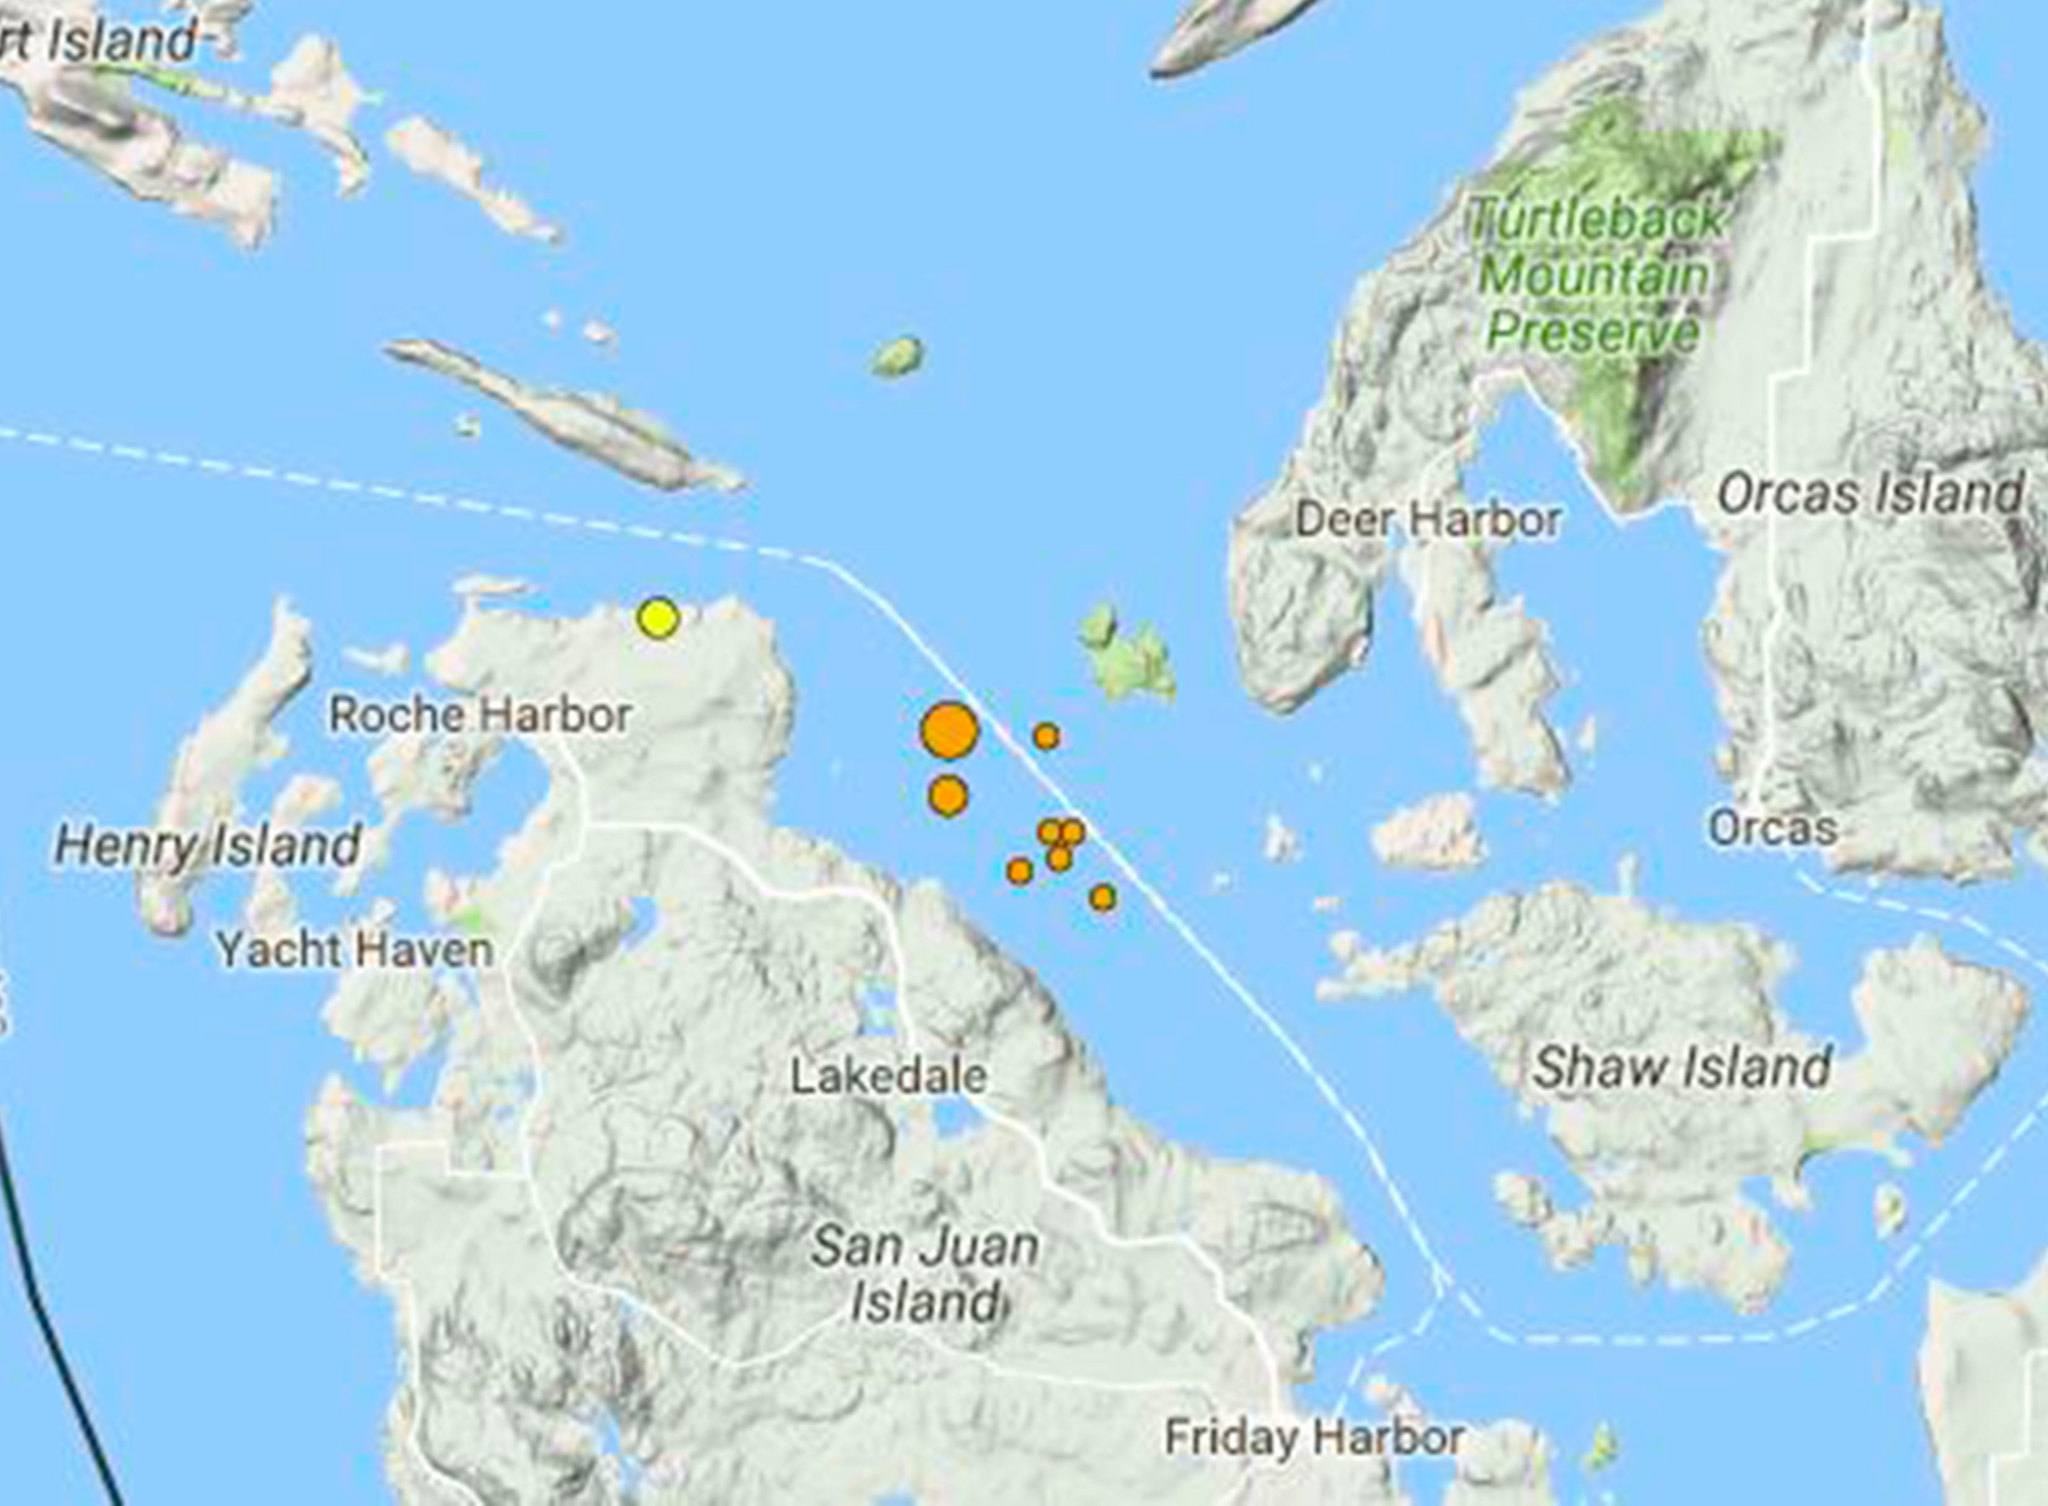 San Juan Islands experience series of underwater quakes | Update